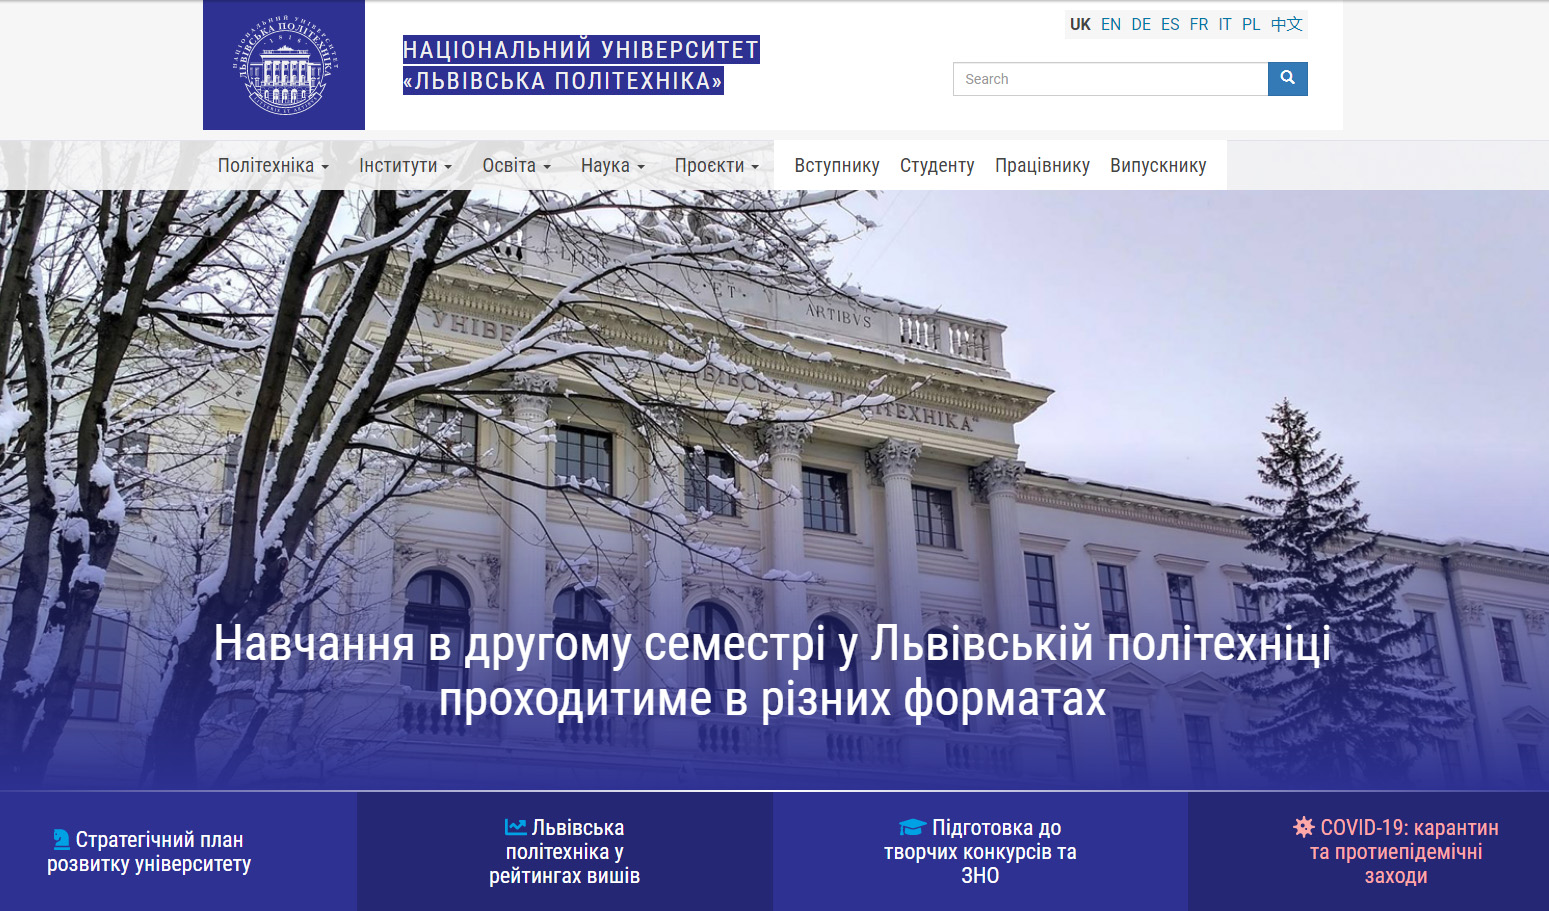 Скріншот із сайту Львівської політехніки